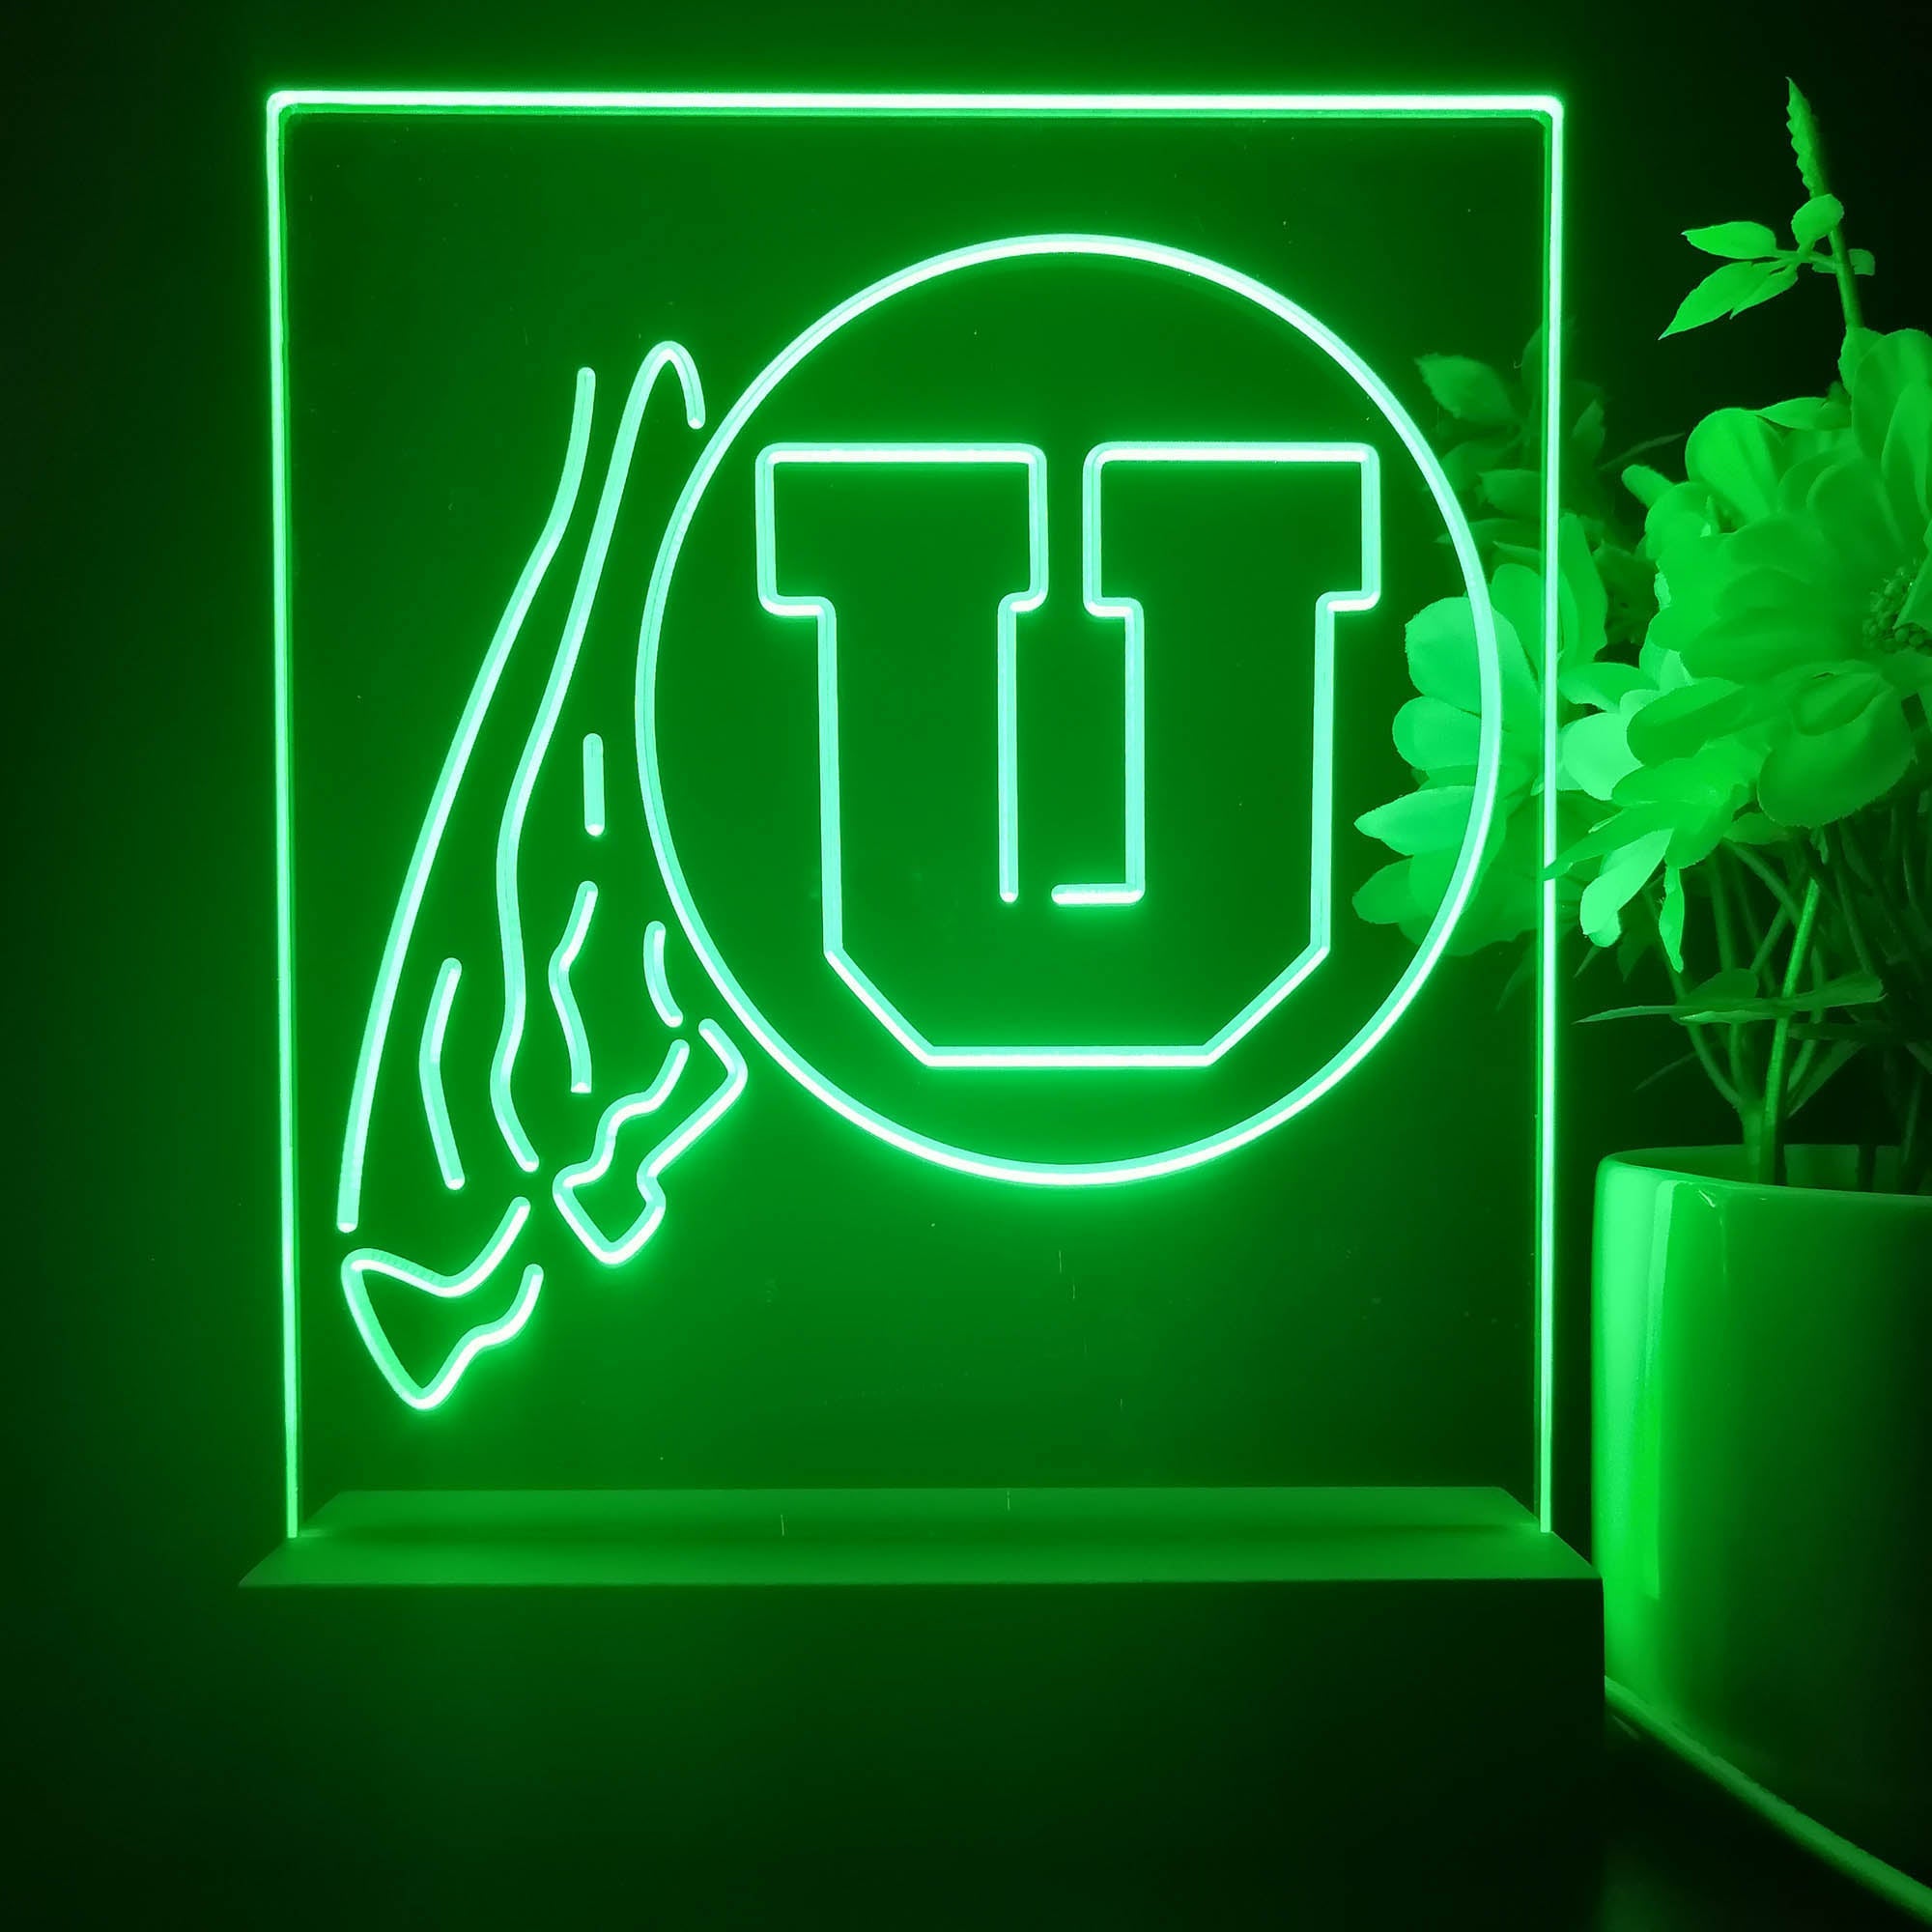 Utah Utes 3D Illusion Night Light Desk Lamp